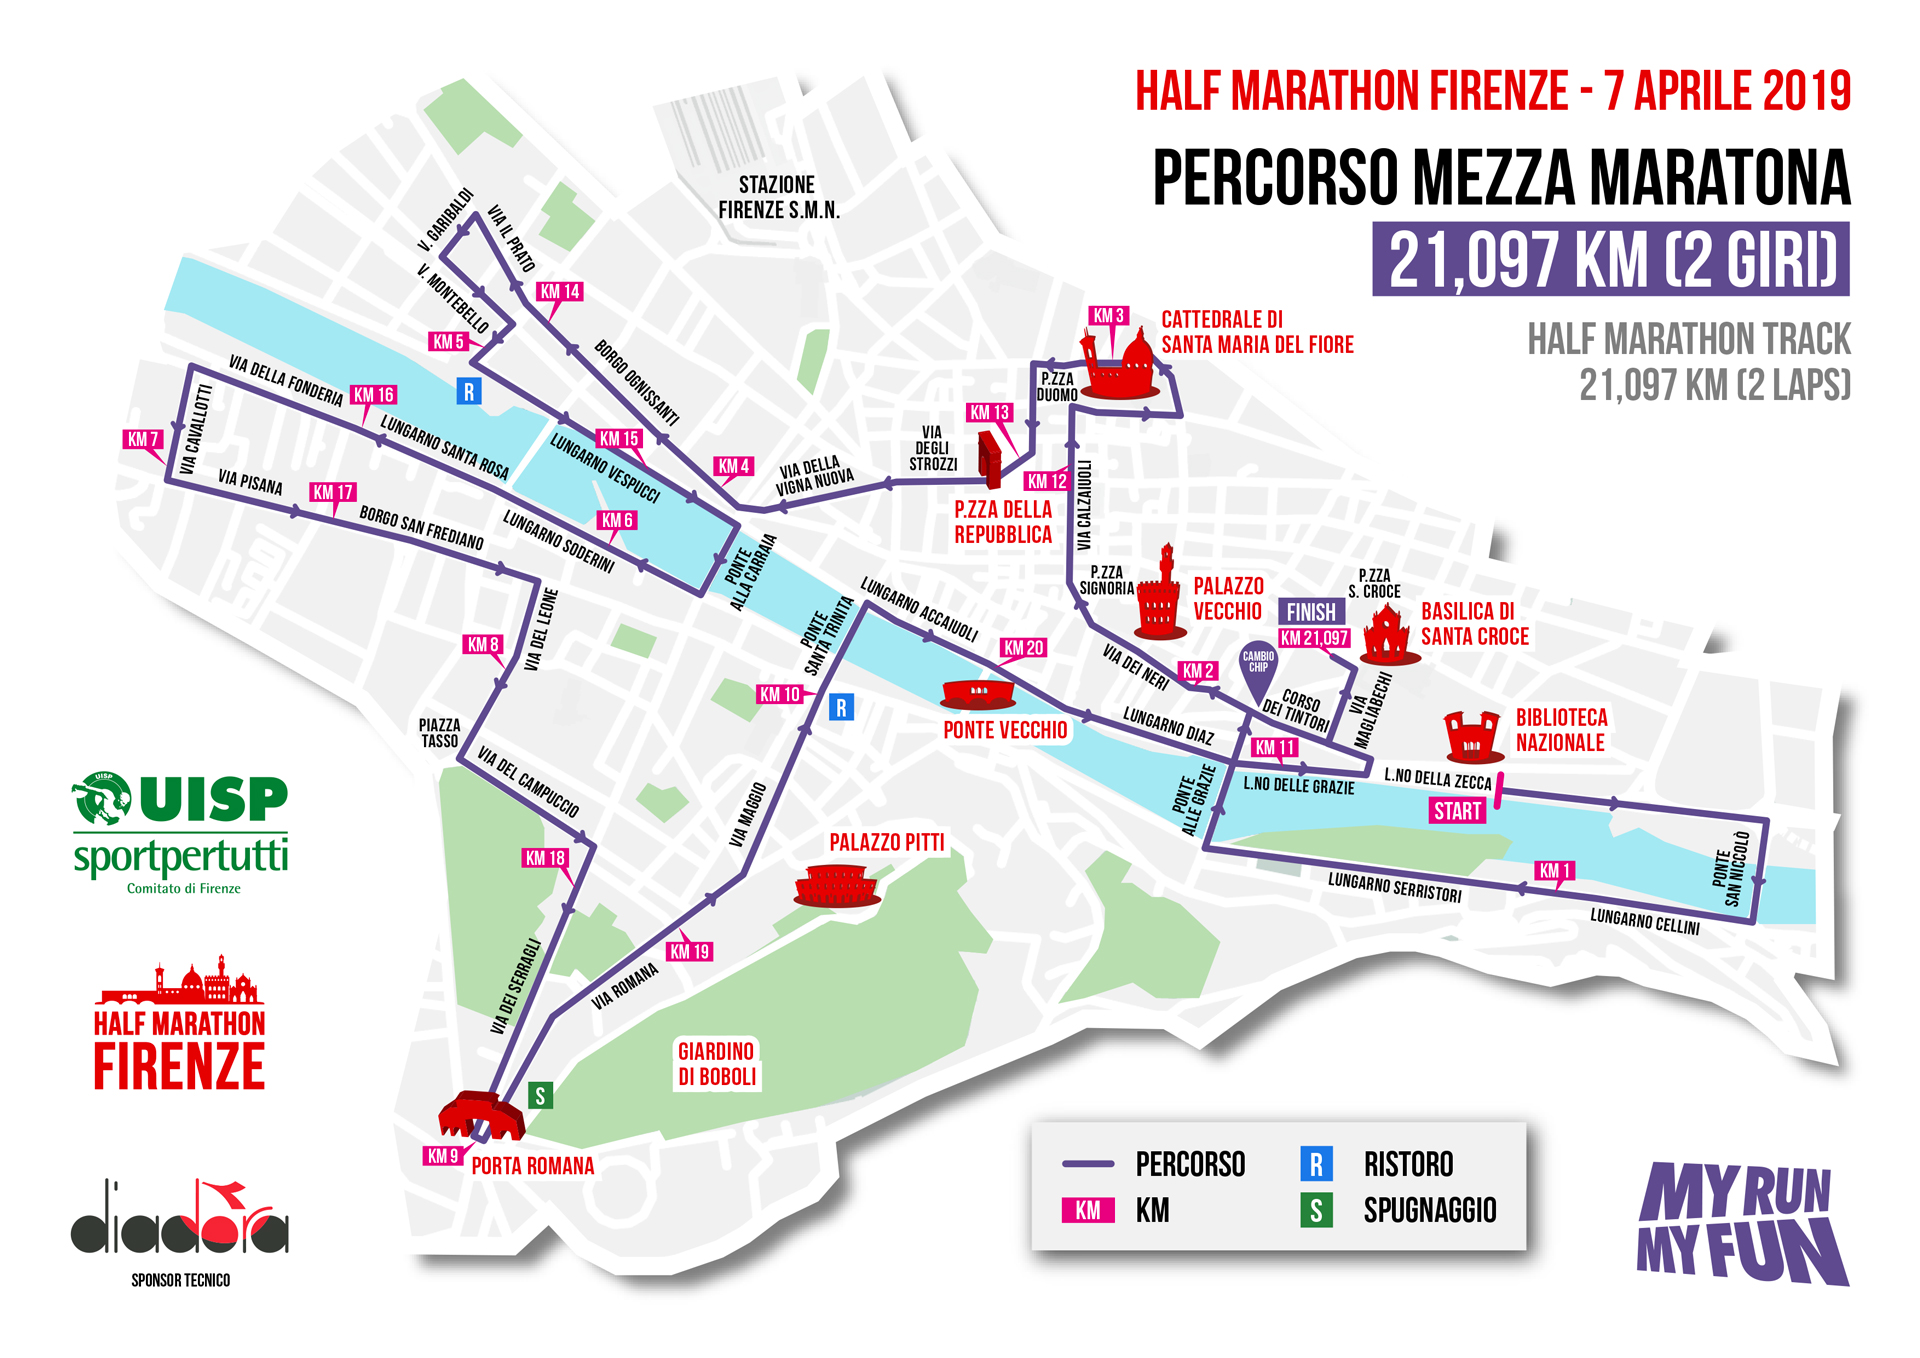 Half Marathon Firenze - Percorso mezza marathona